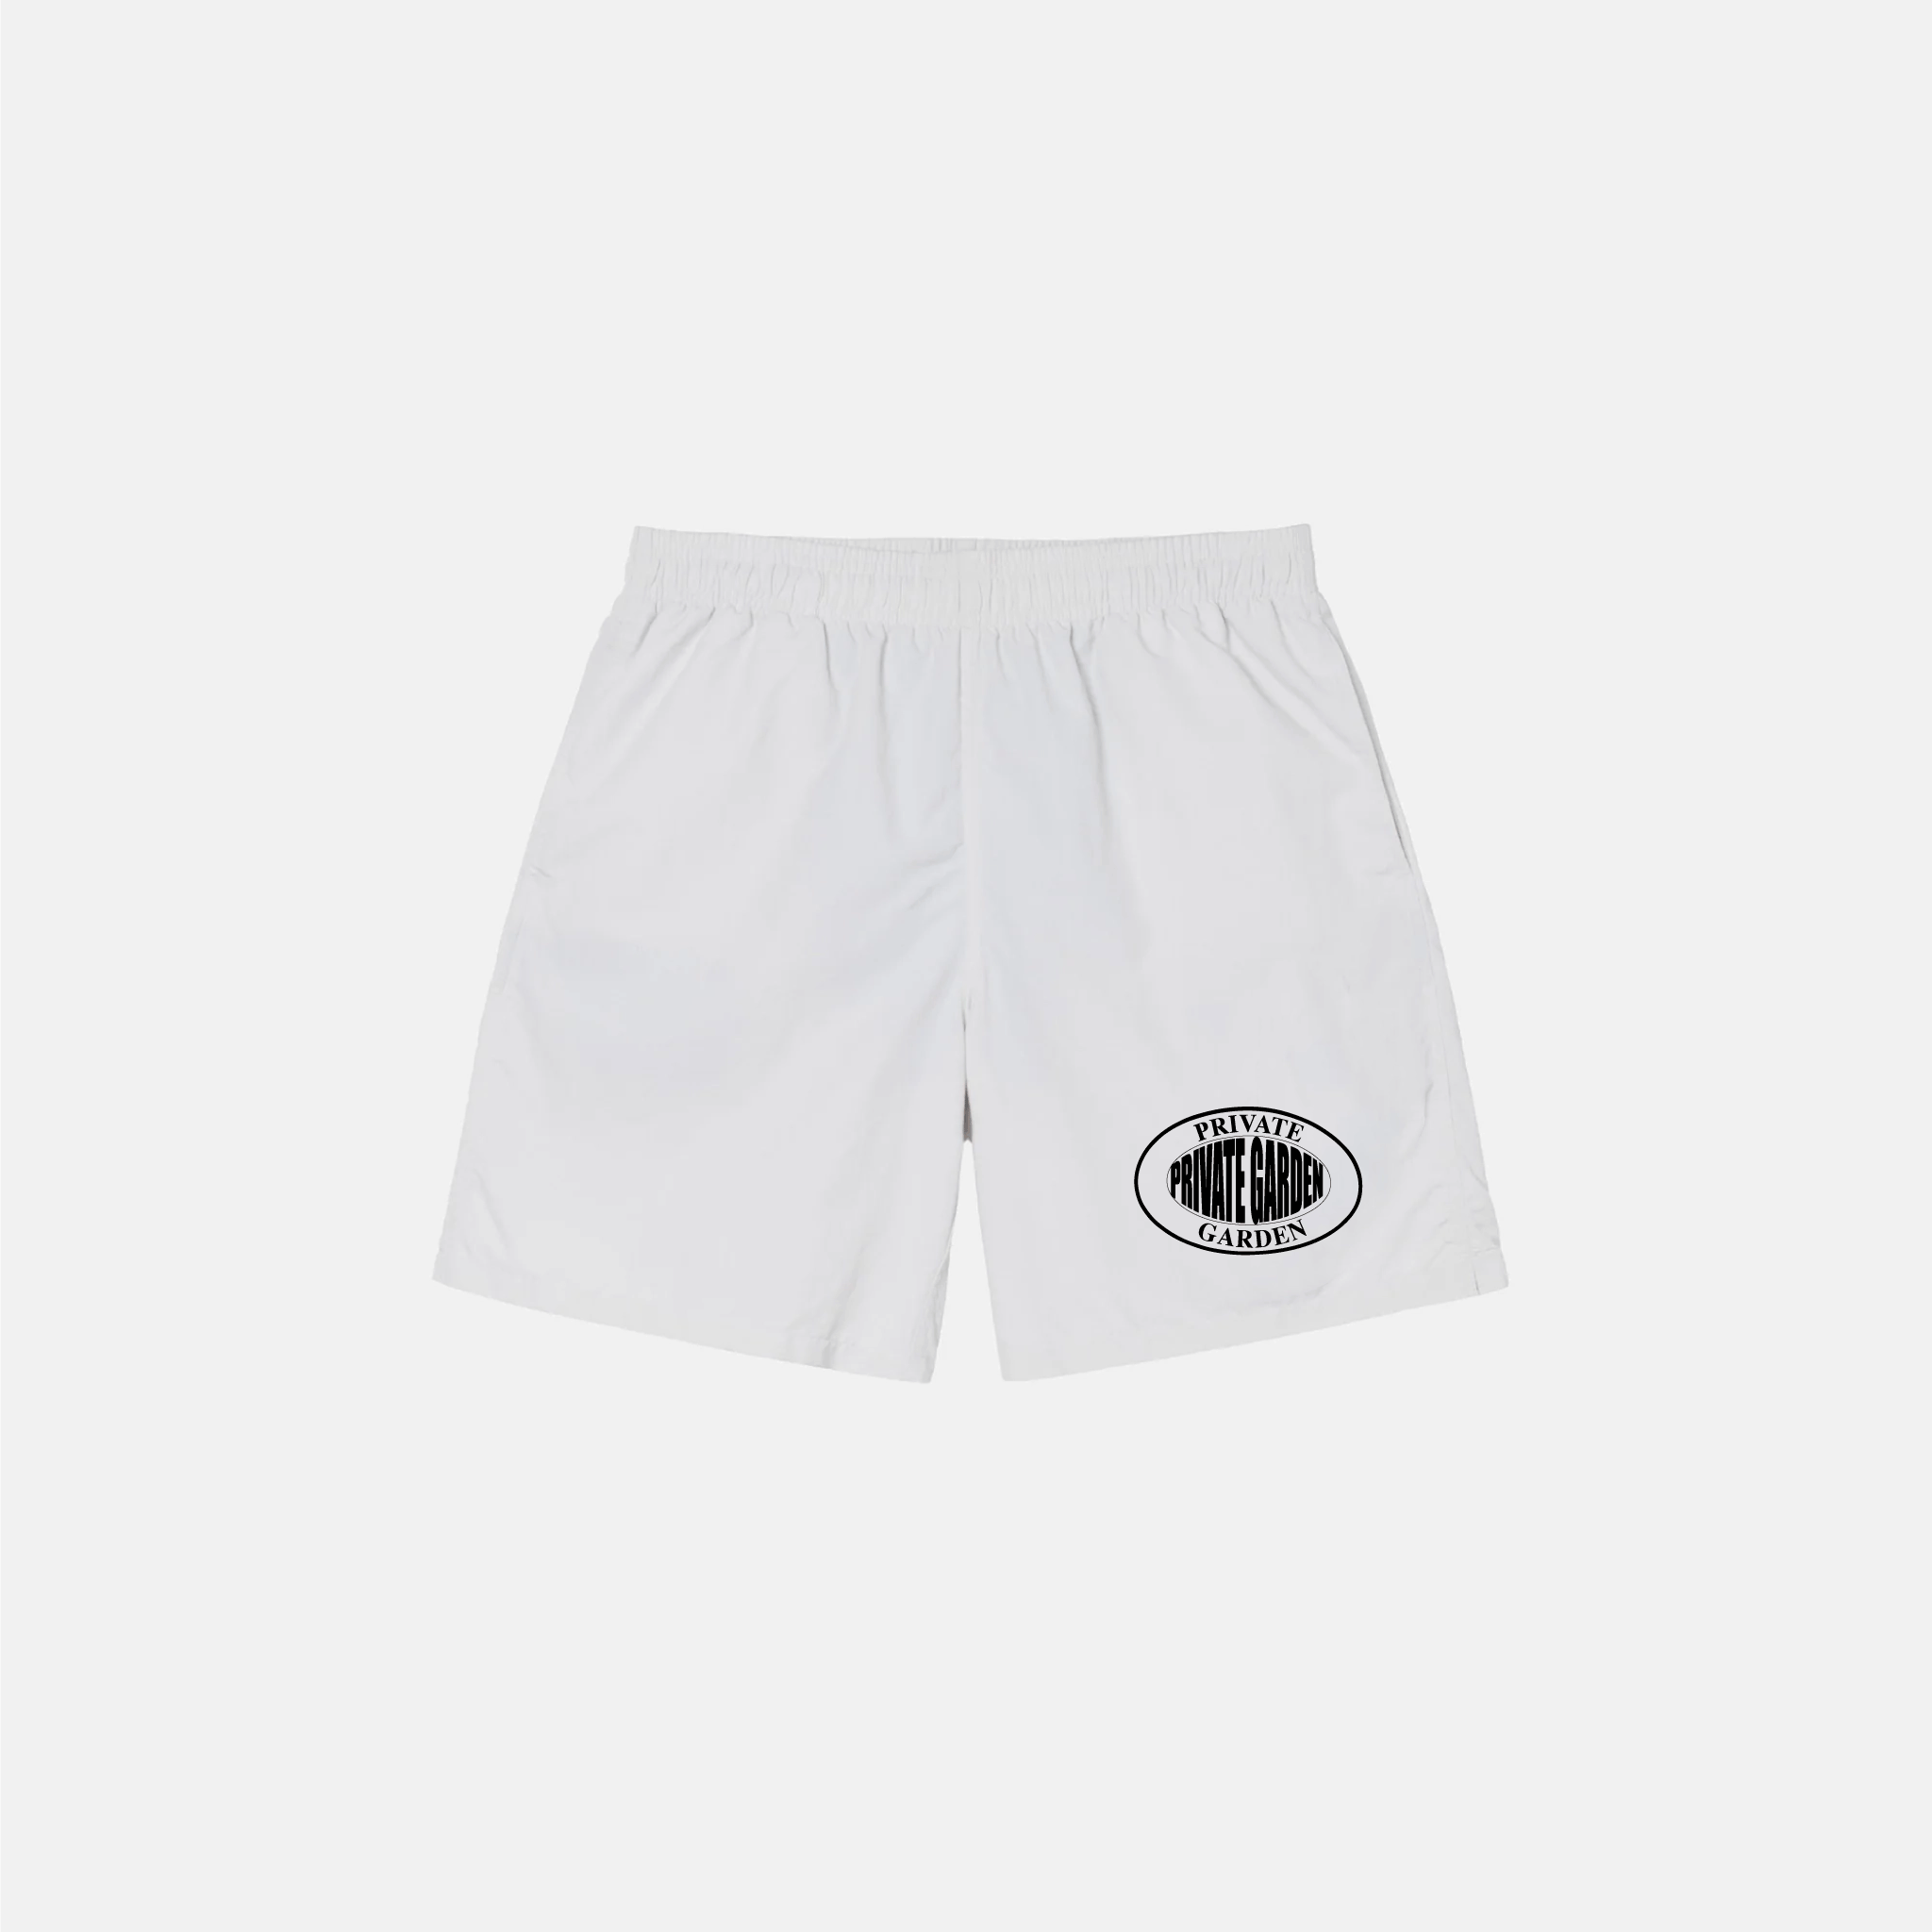 Private Garden Oval Logo Cream Shorts